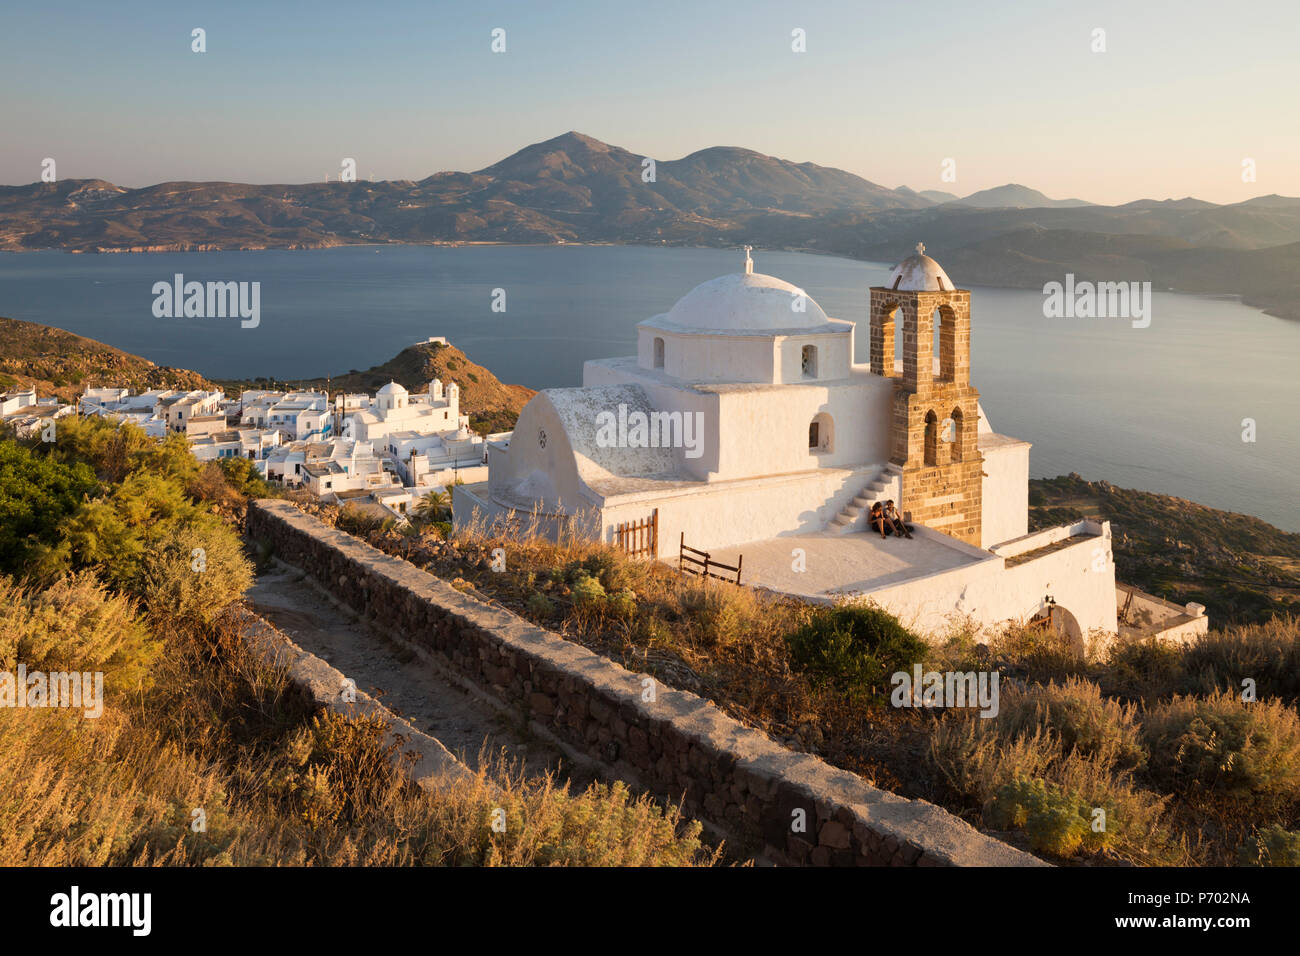 Vista de Plaka, con iglesia ortodoxa griega y Milos Bahía del castillo de Plaka, Milos, Cyclades, islas griegas del Mar Egeo, Grecia, Europa Foto de stock